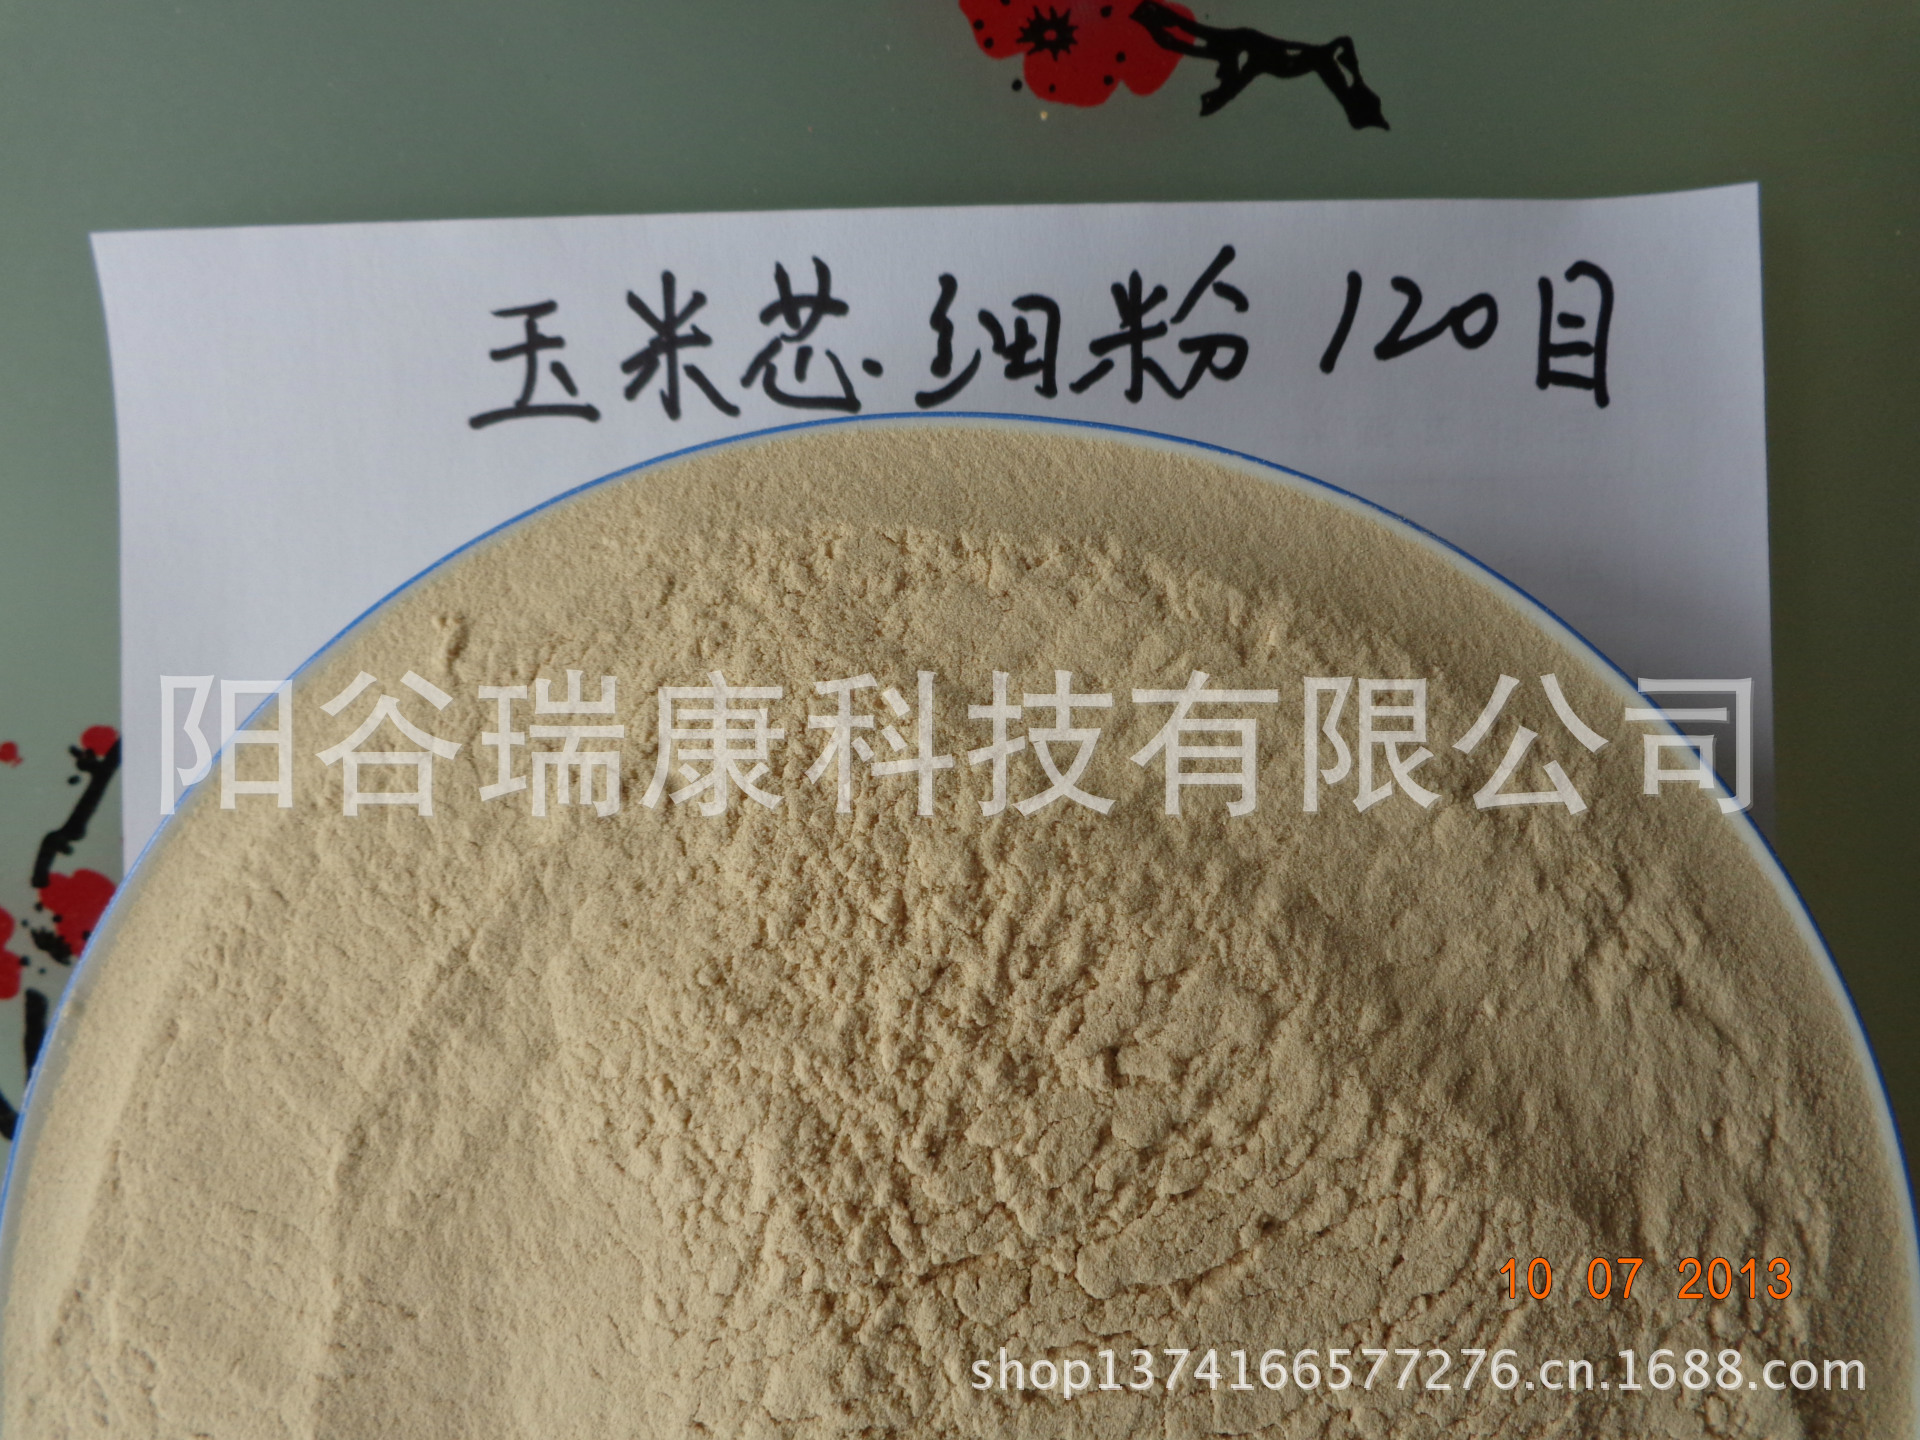 厂家专业生产加工各类规格的玉米芯细粉示例图2